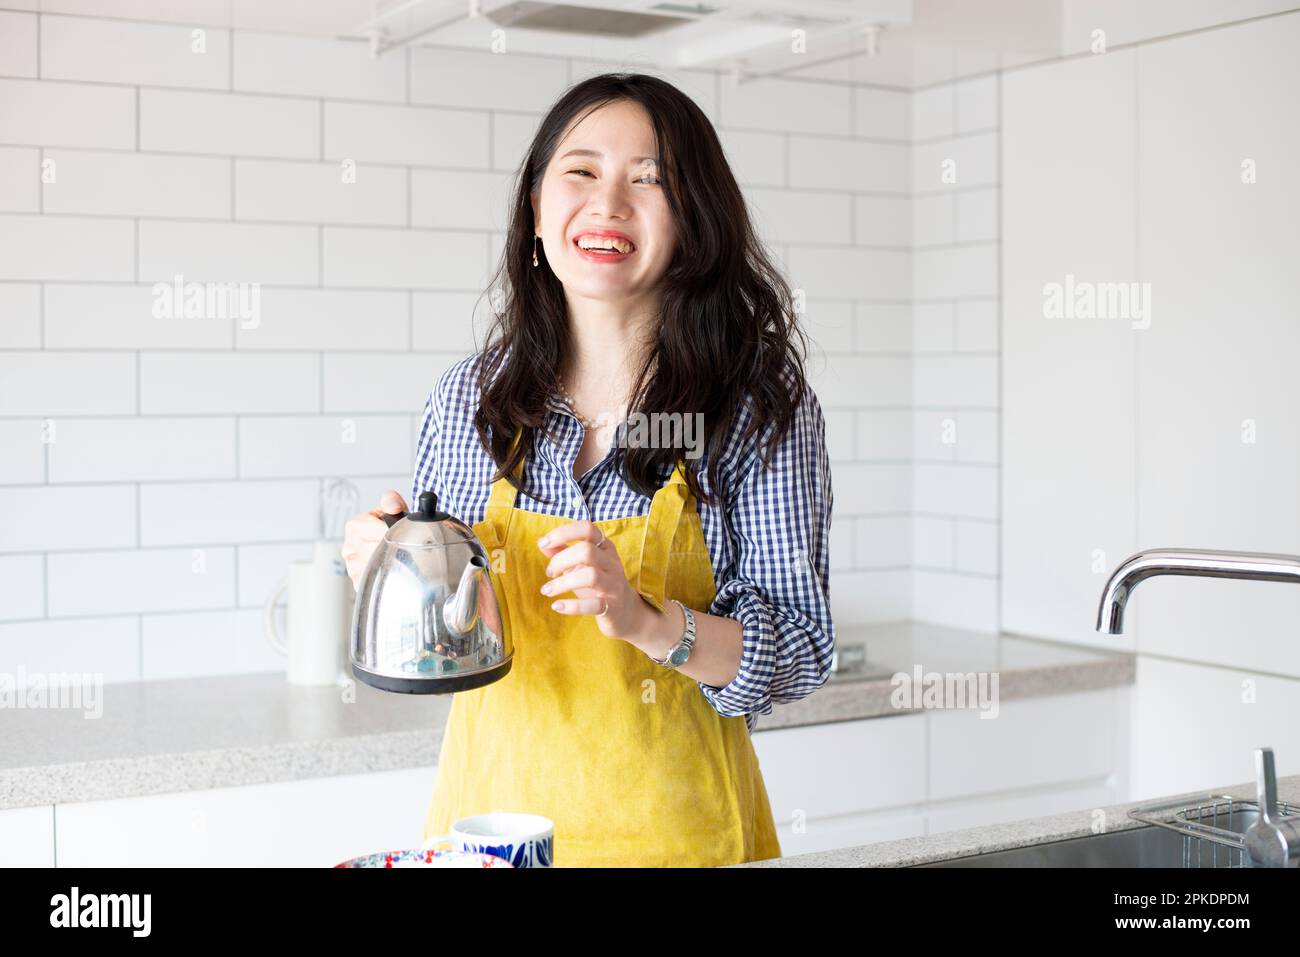 Eine Frau, die eine Schürze trägt und in der Küche lacht Stockfoto